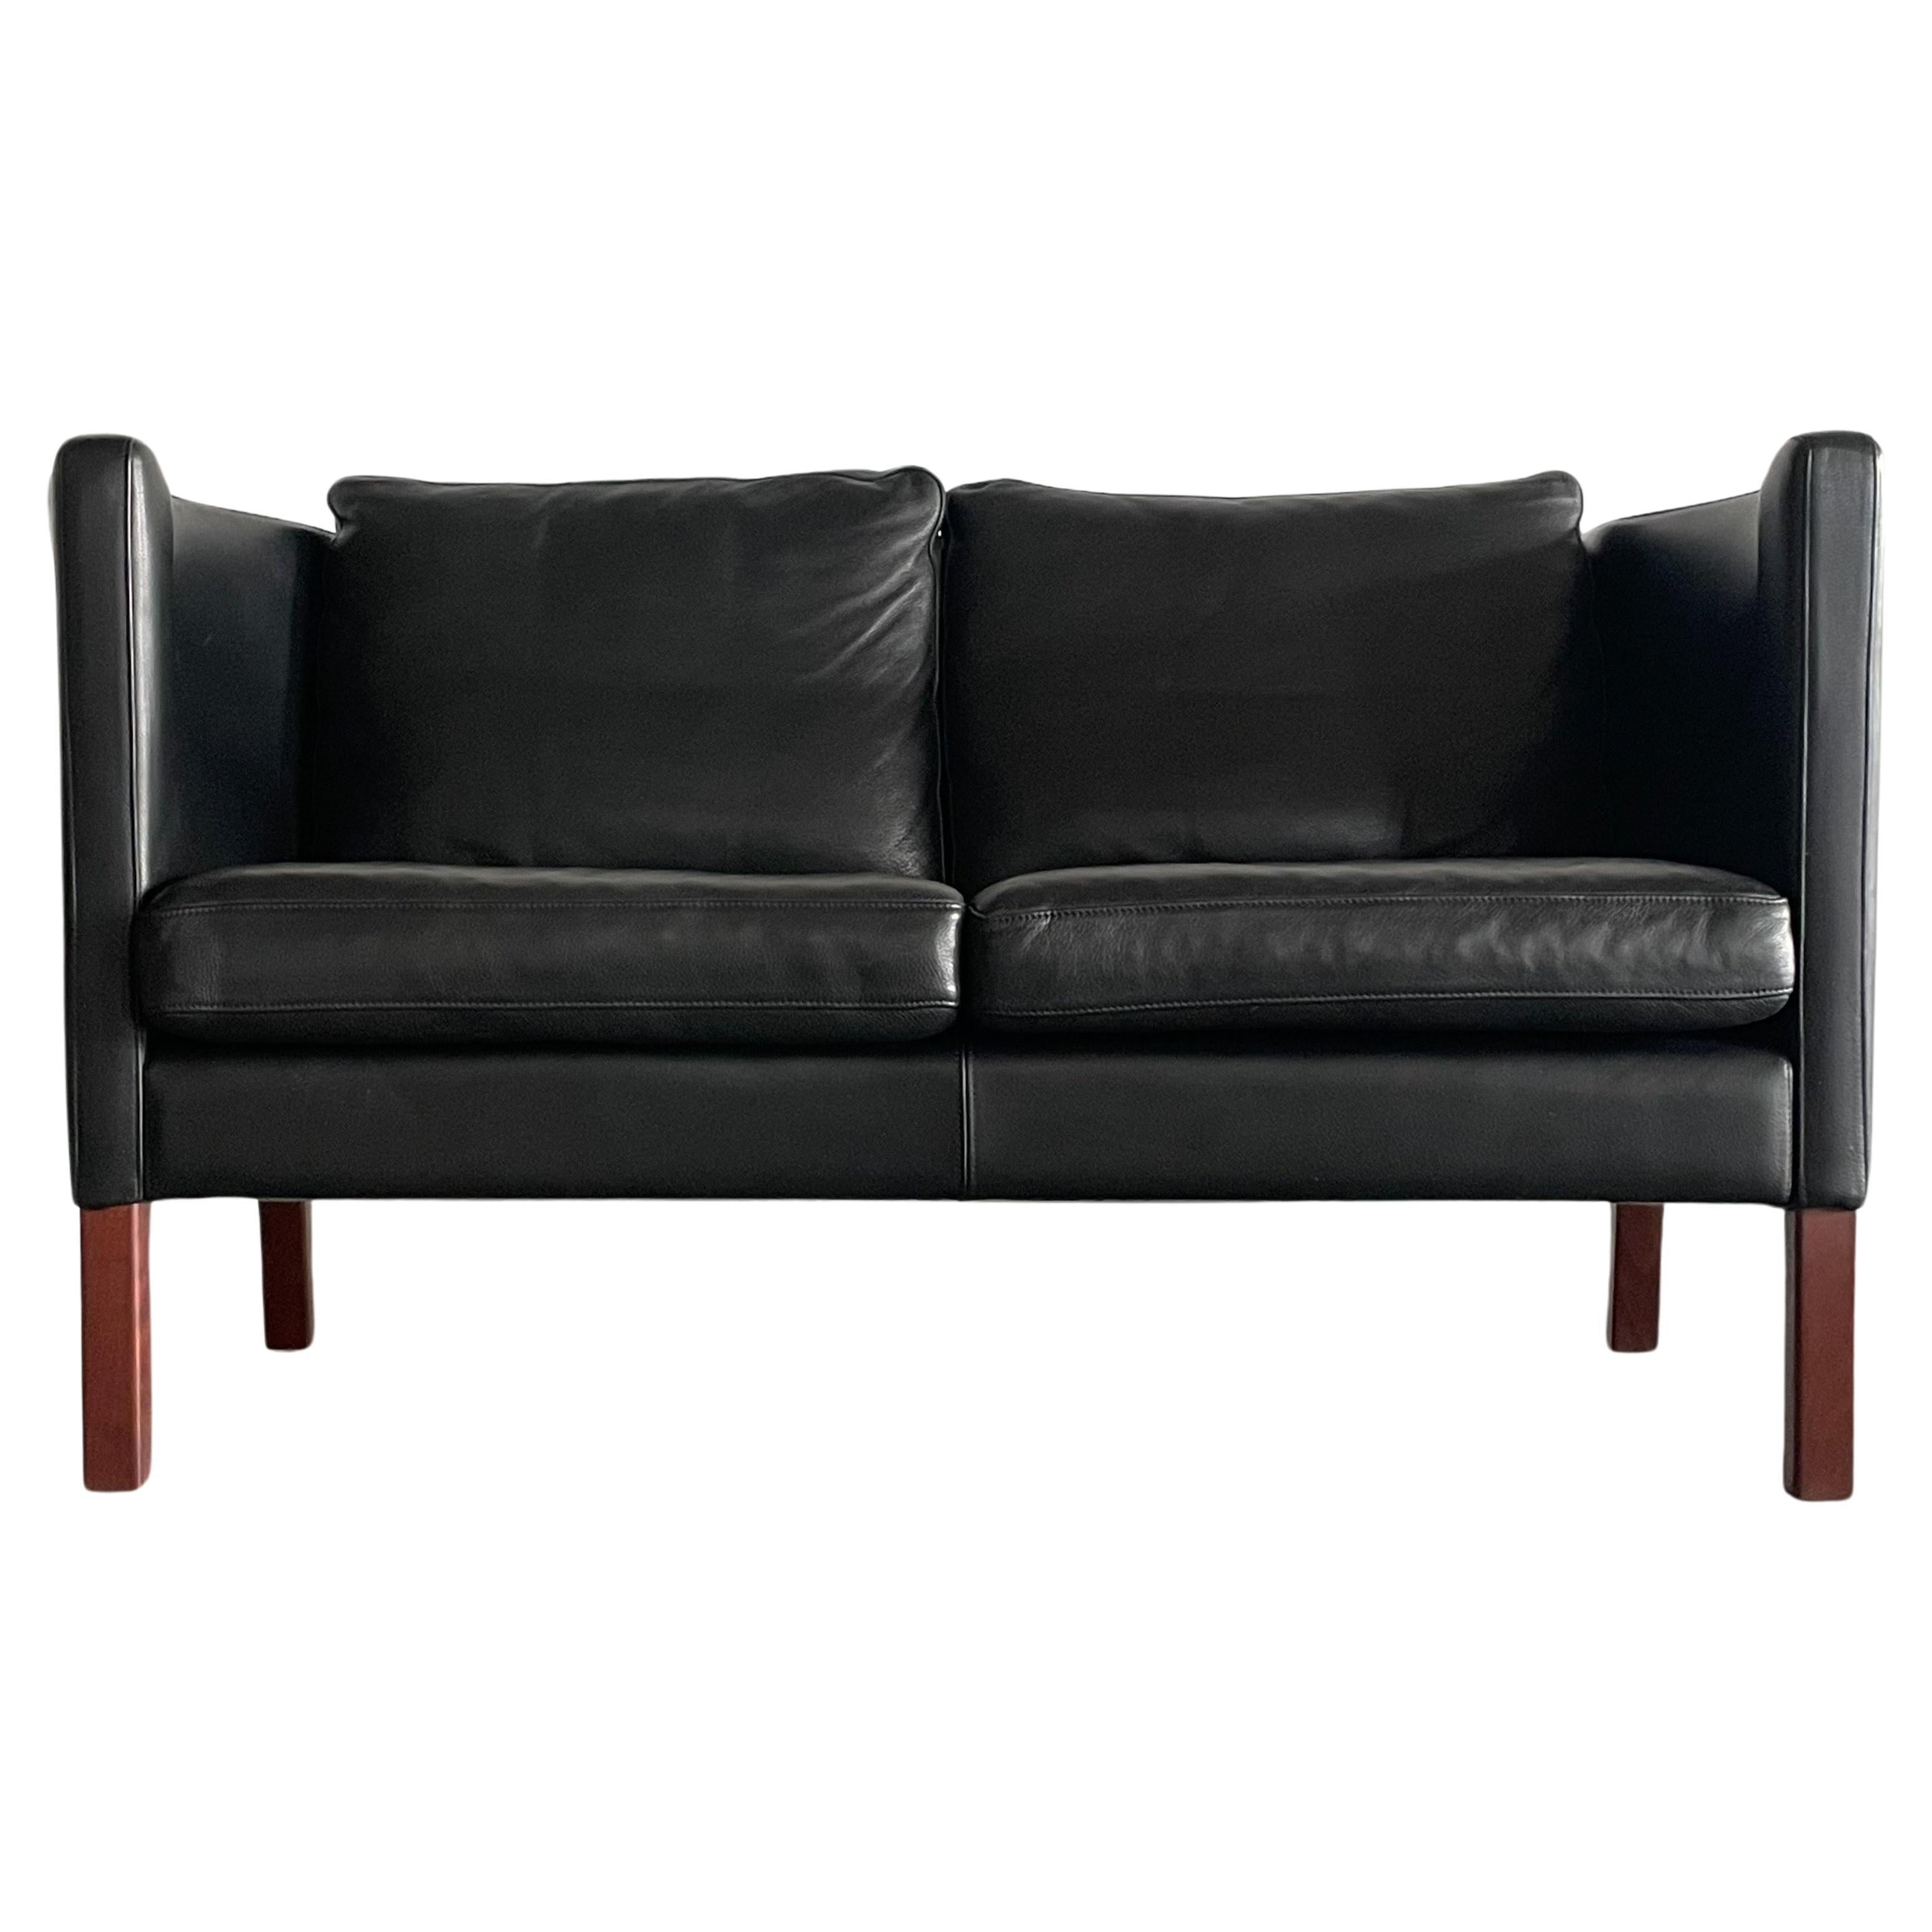 Arne Vodder AV59 Leather Two-seater Sofa for Nielaus For Sale